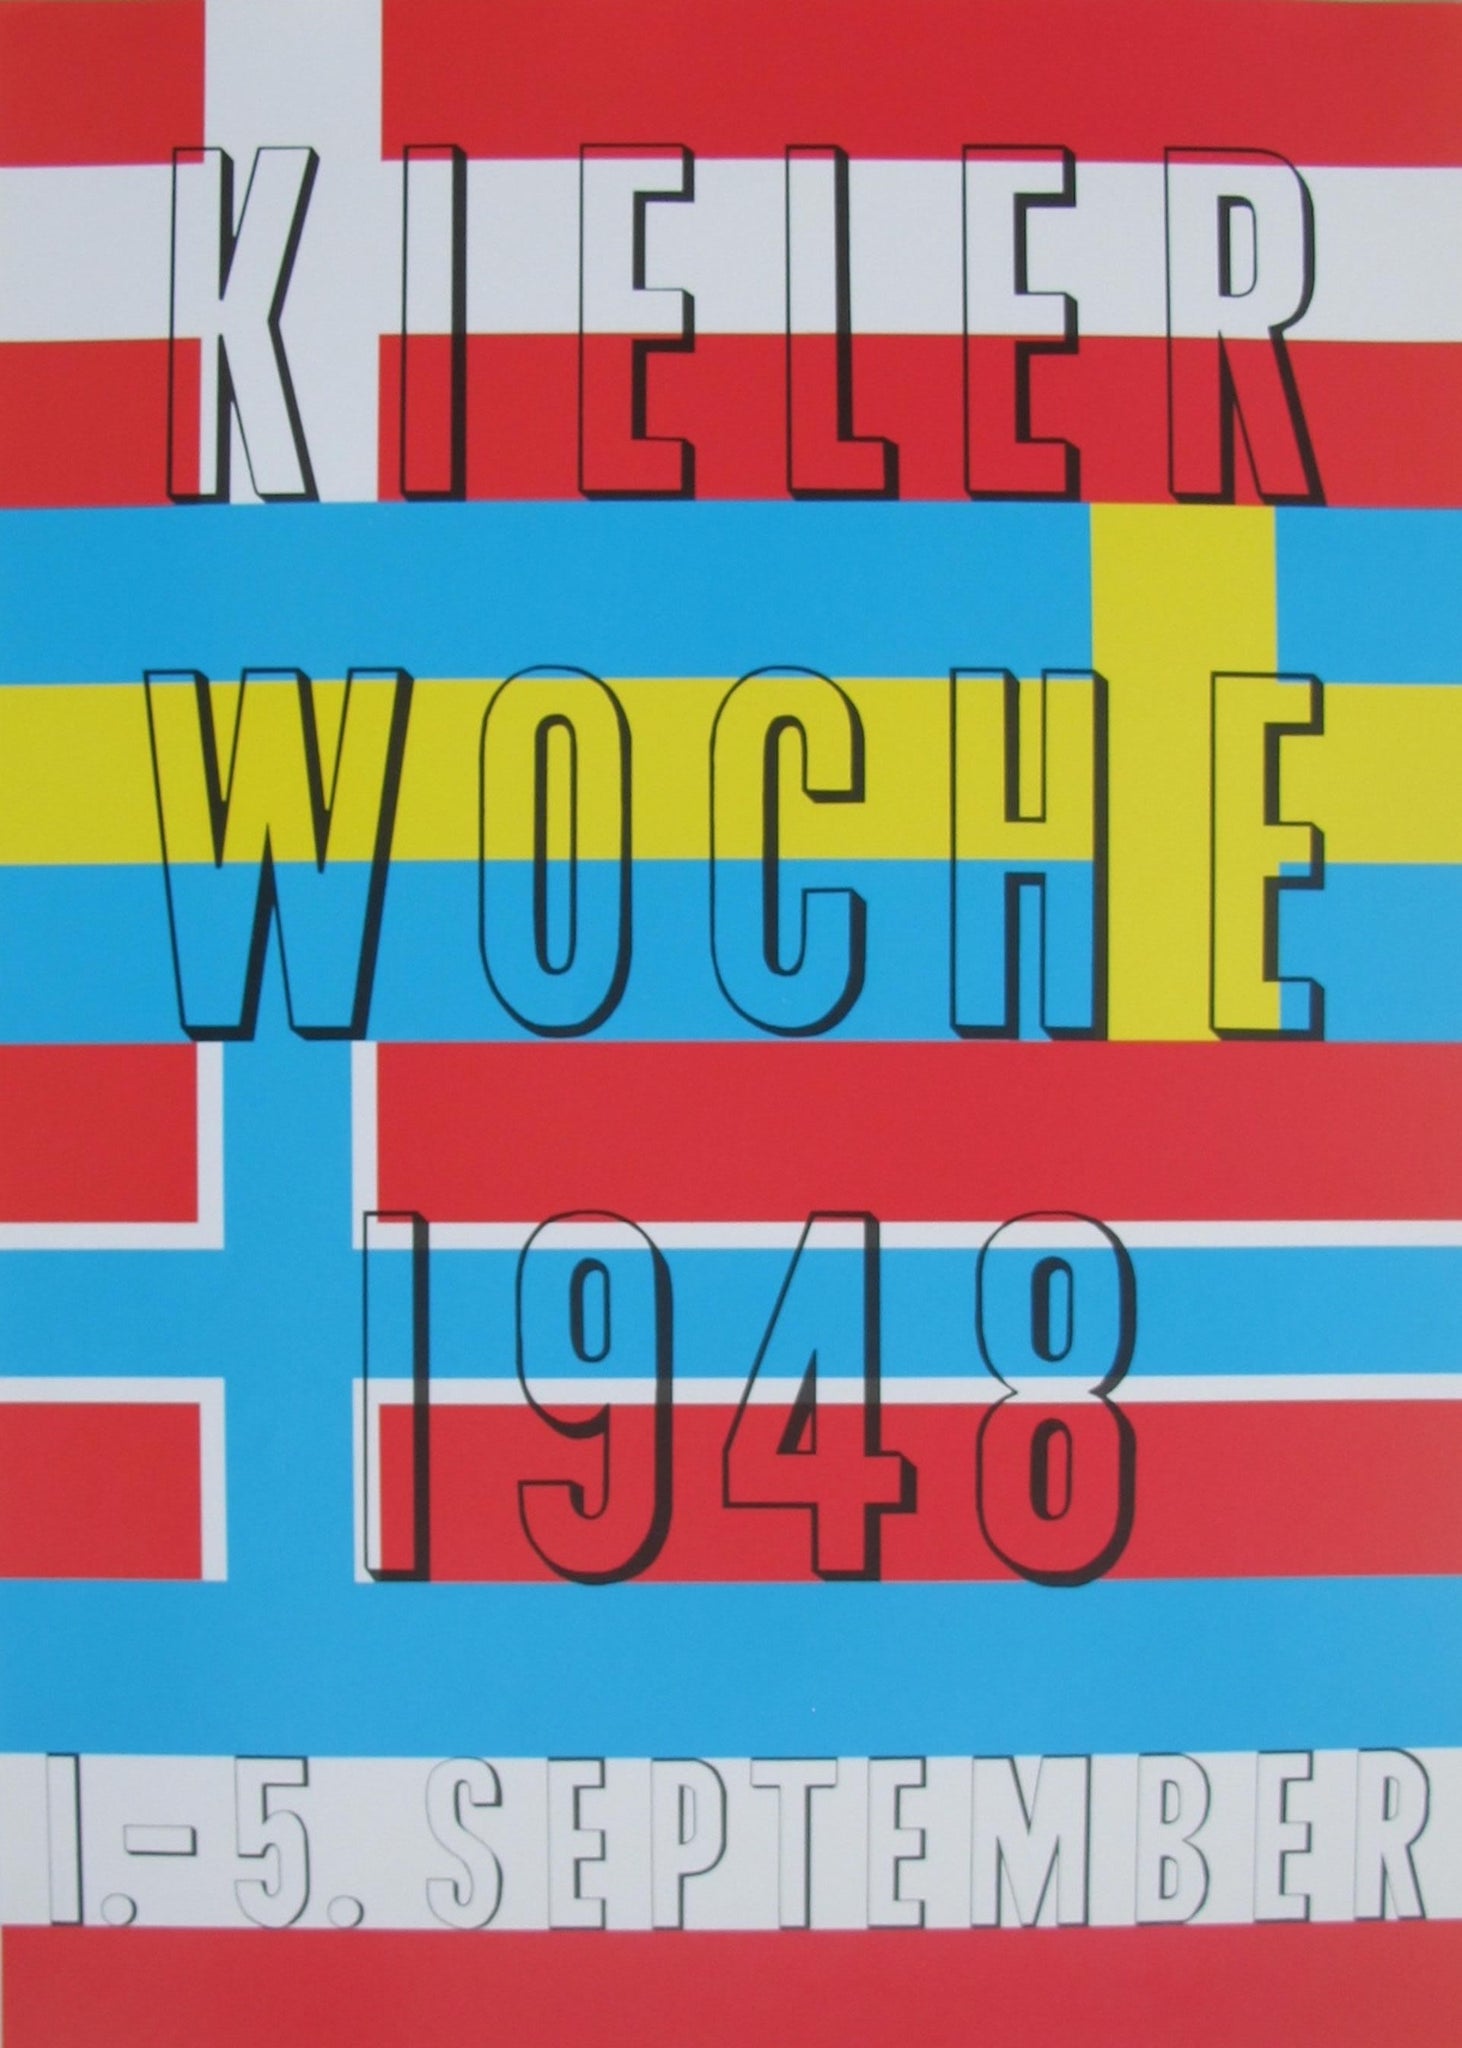 1948 Kieler Woche Poster